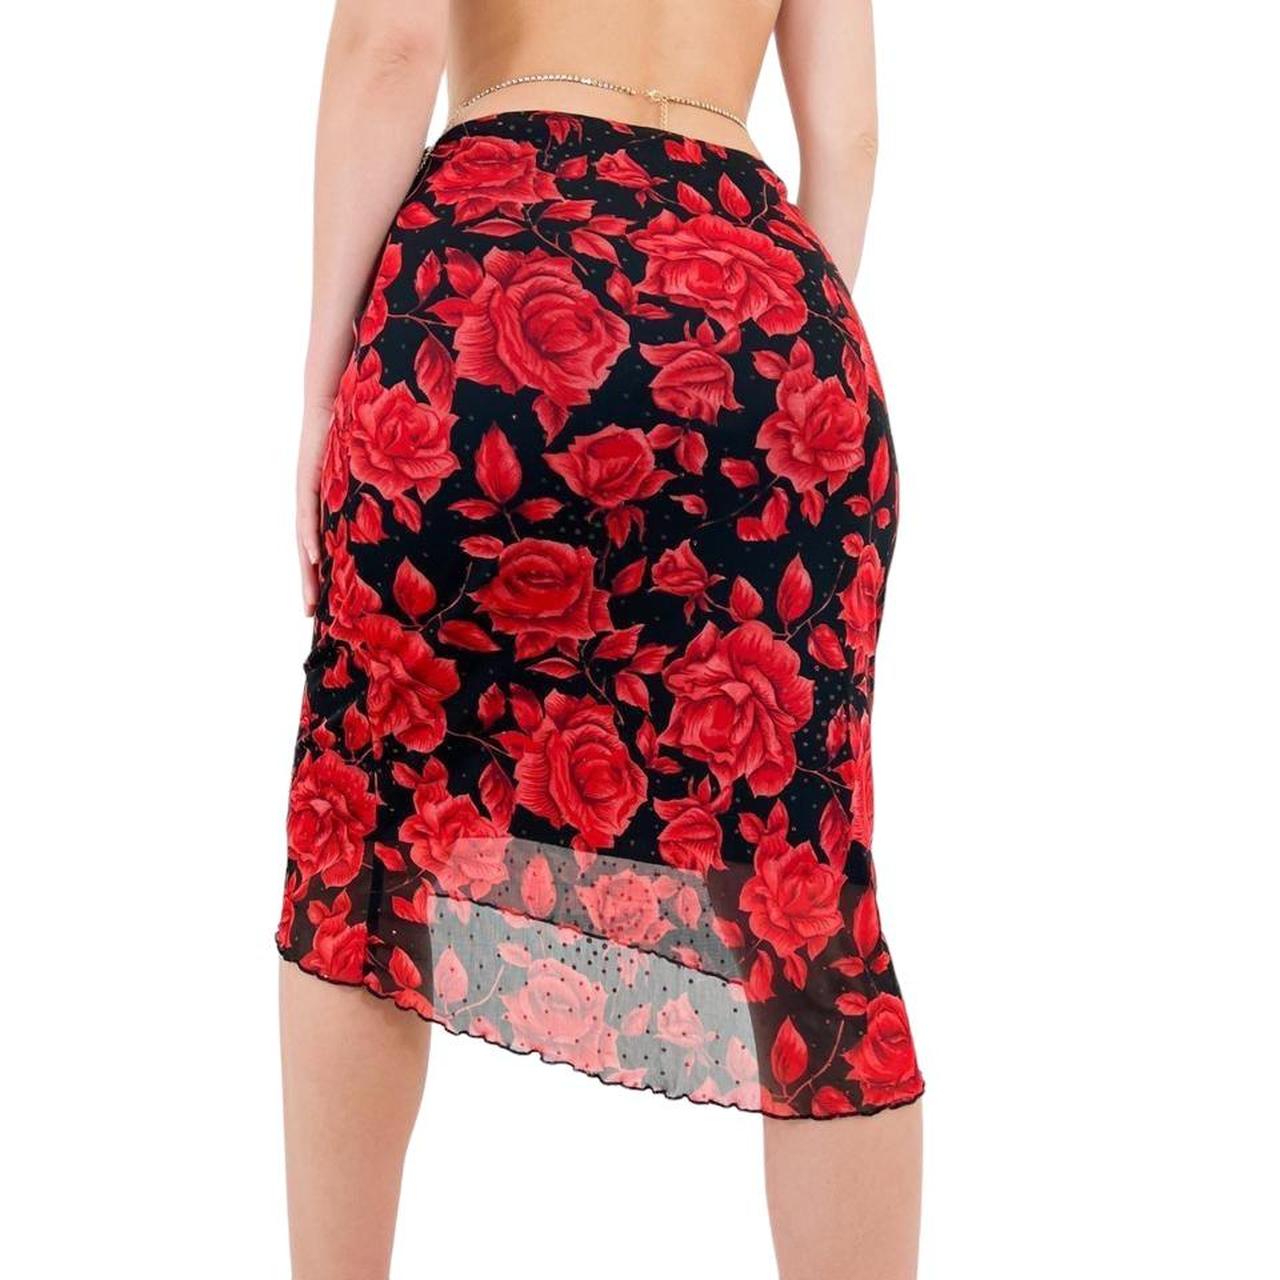 Y2k Vintage Black + Red Rose Floral Print Low-Rise Stretchy Skirt w/ Glitter Details [M]